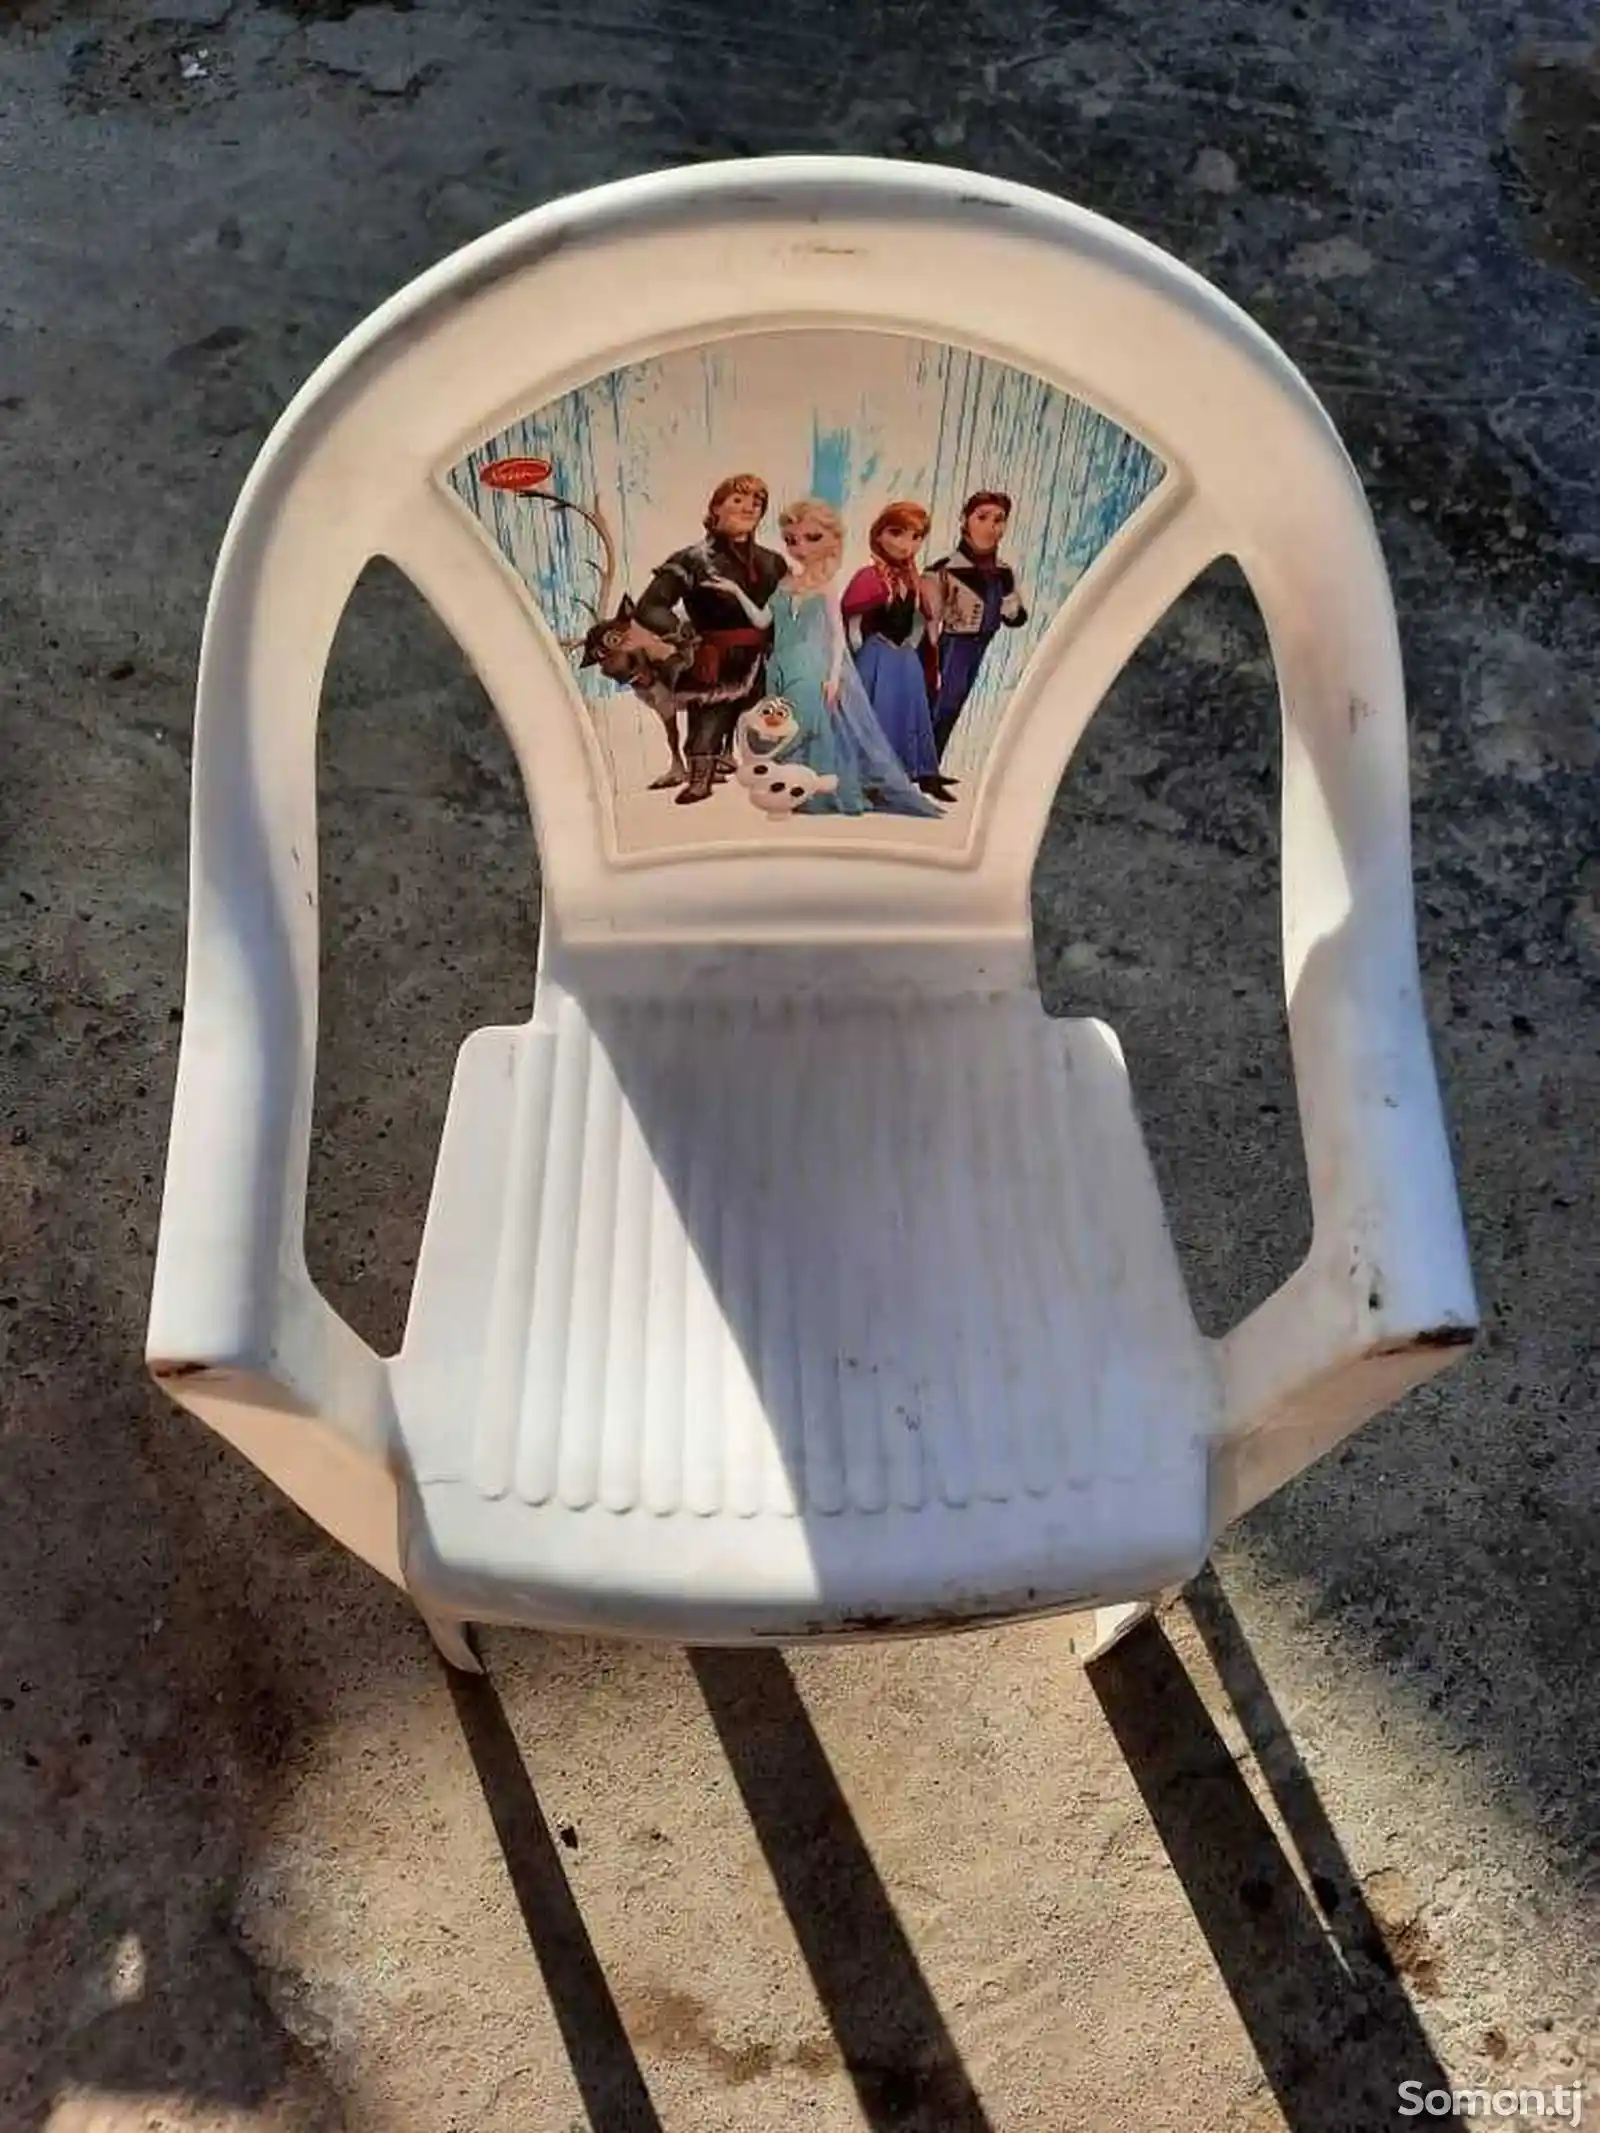 Детский стульчик-2